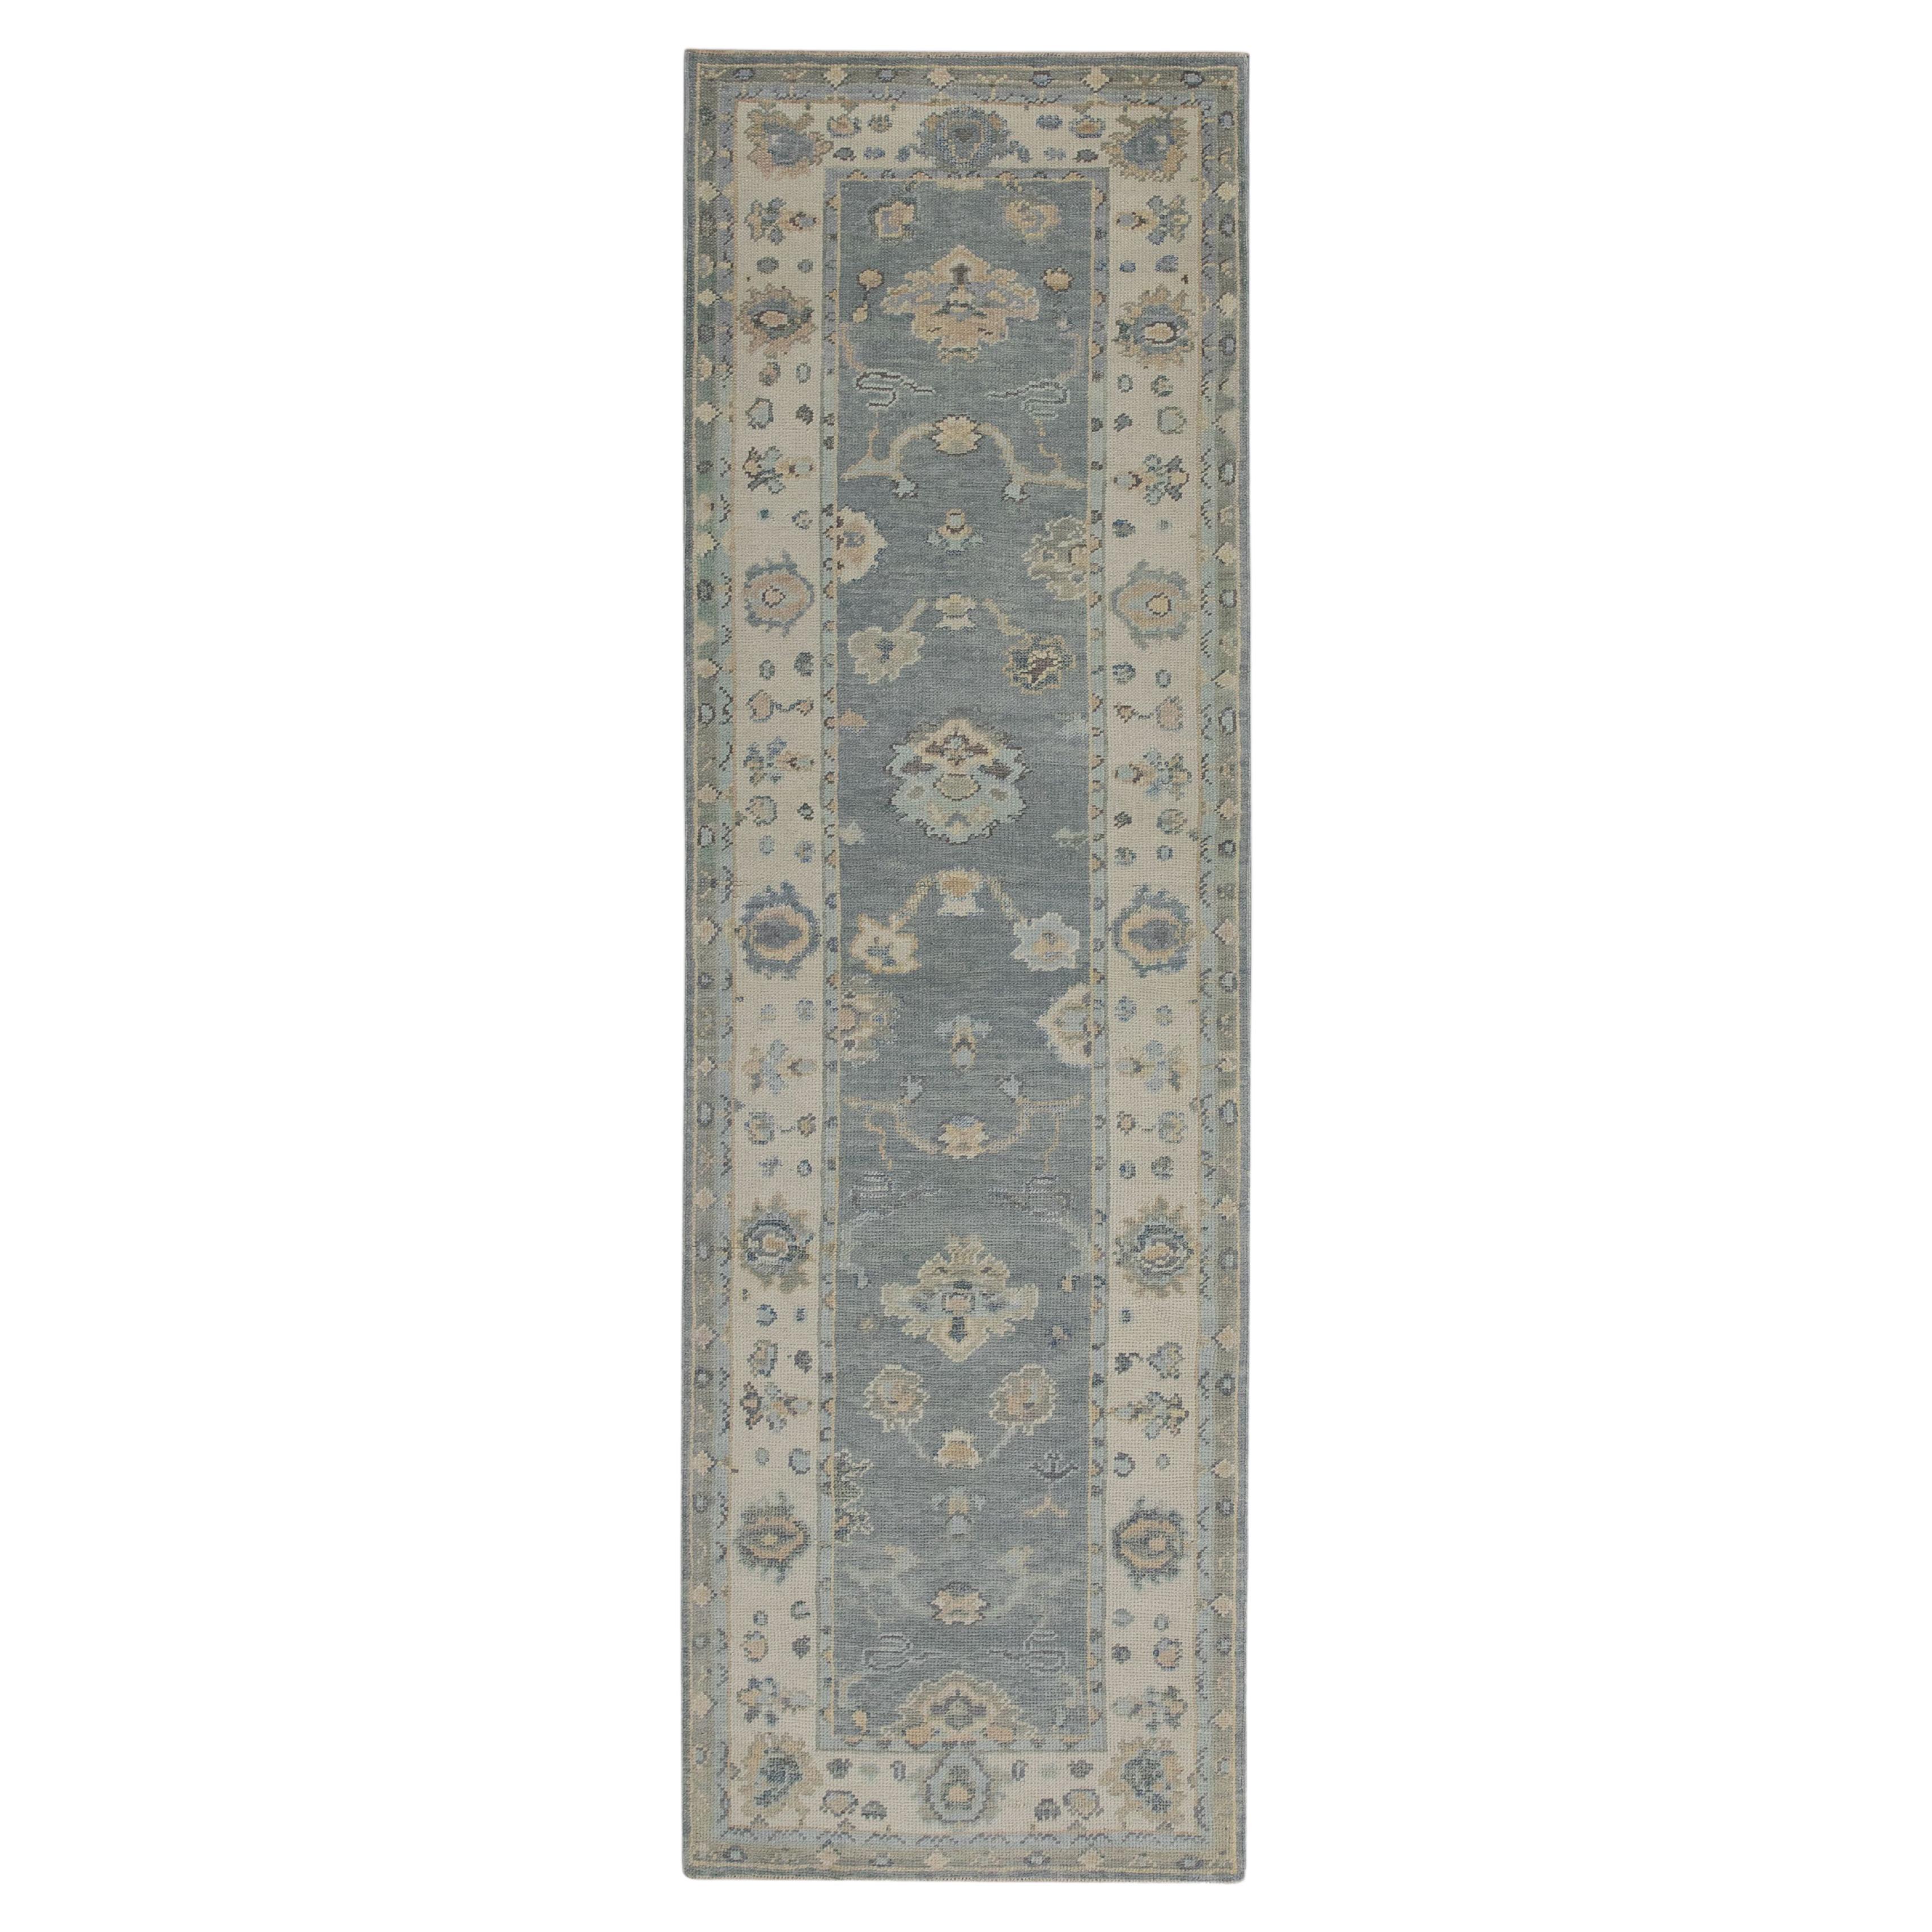 Handgewebter türkischer Oushak-Teppich aus Wolle 2'11"x 9'5"